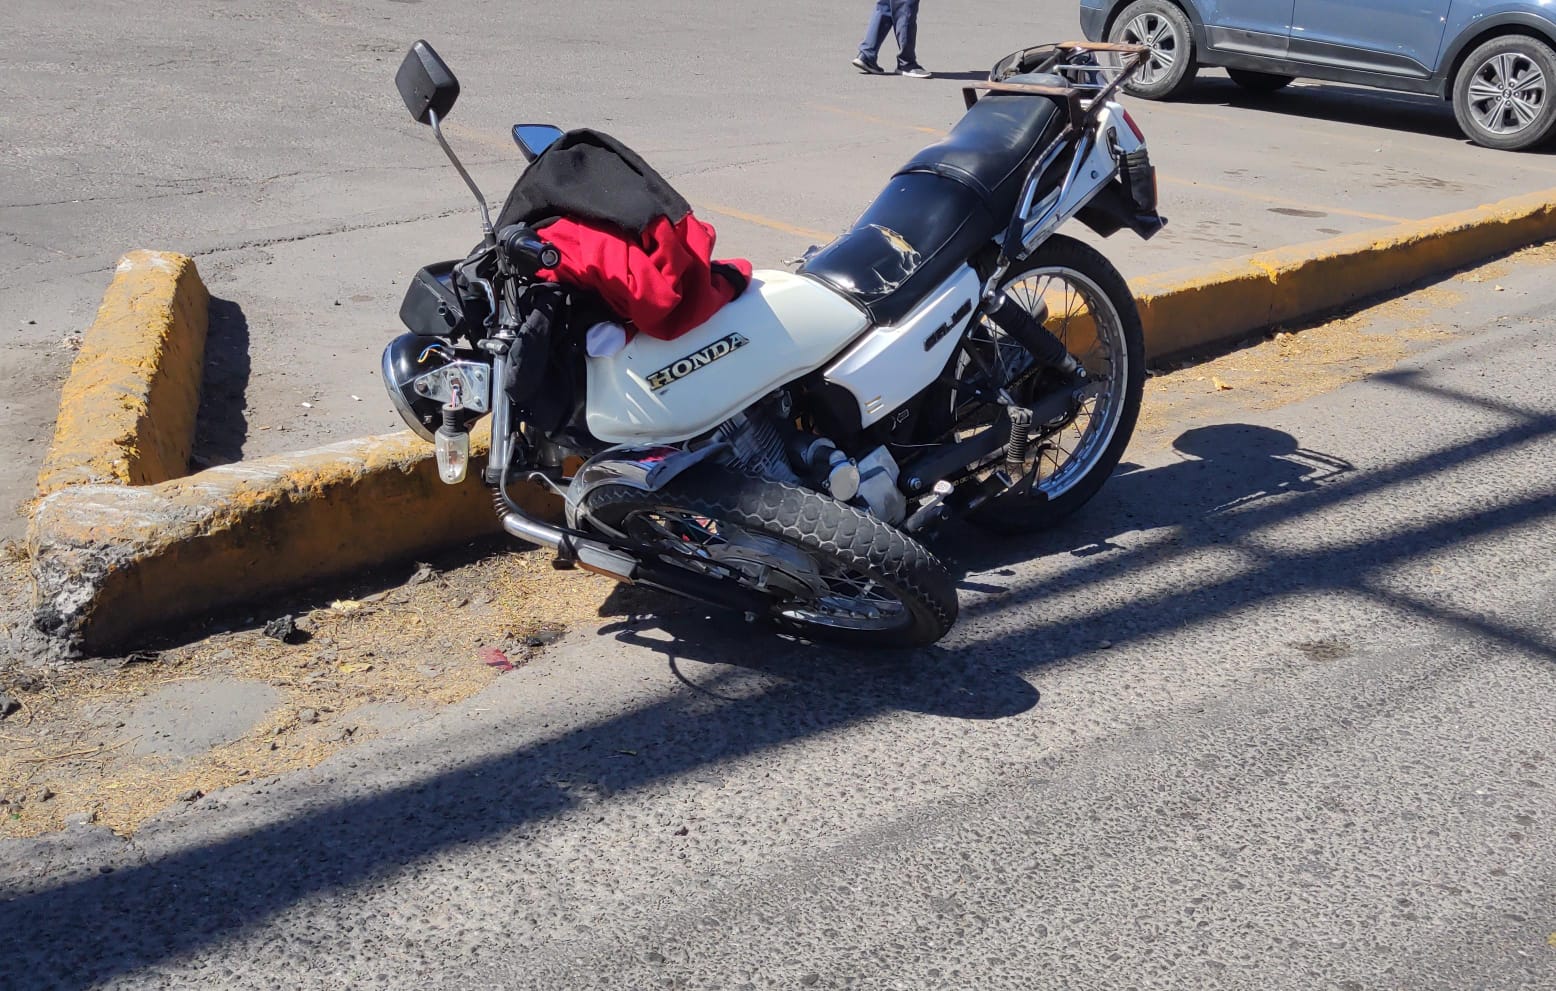 Automovilista realiza corte circulación a motociclista y lo derriba en Jurica